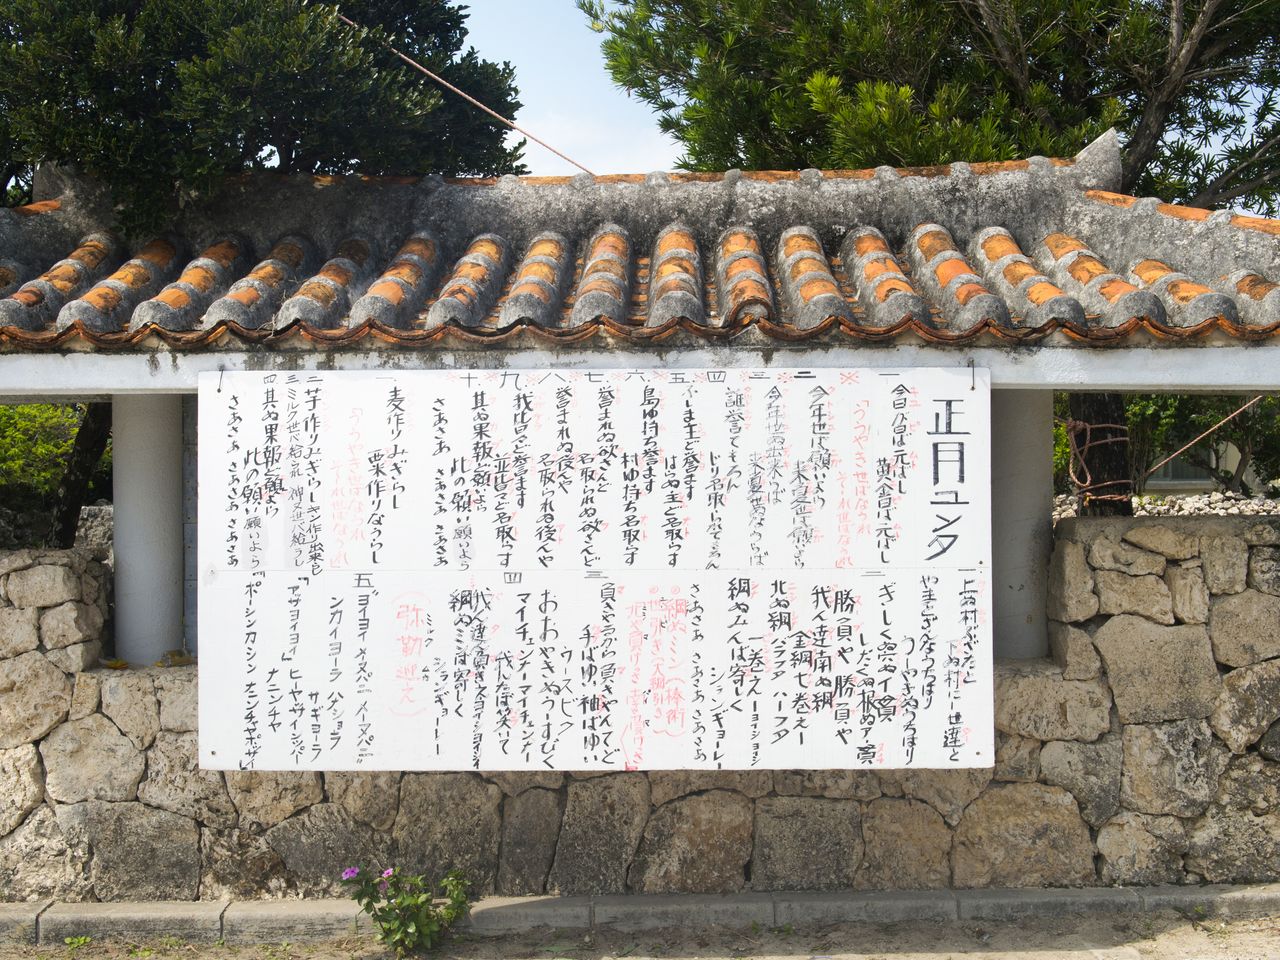 黑岛传统艺能馆前挂着大幅《正月yunta》的歌词